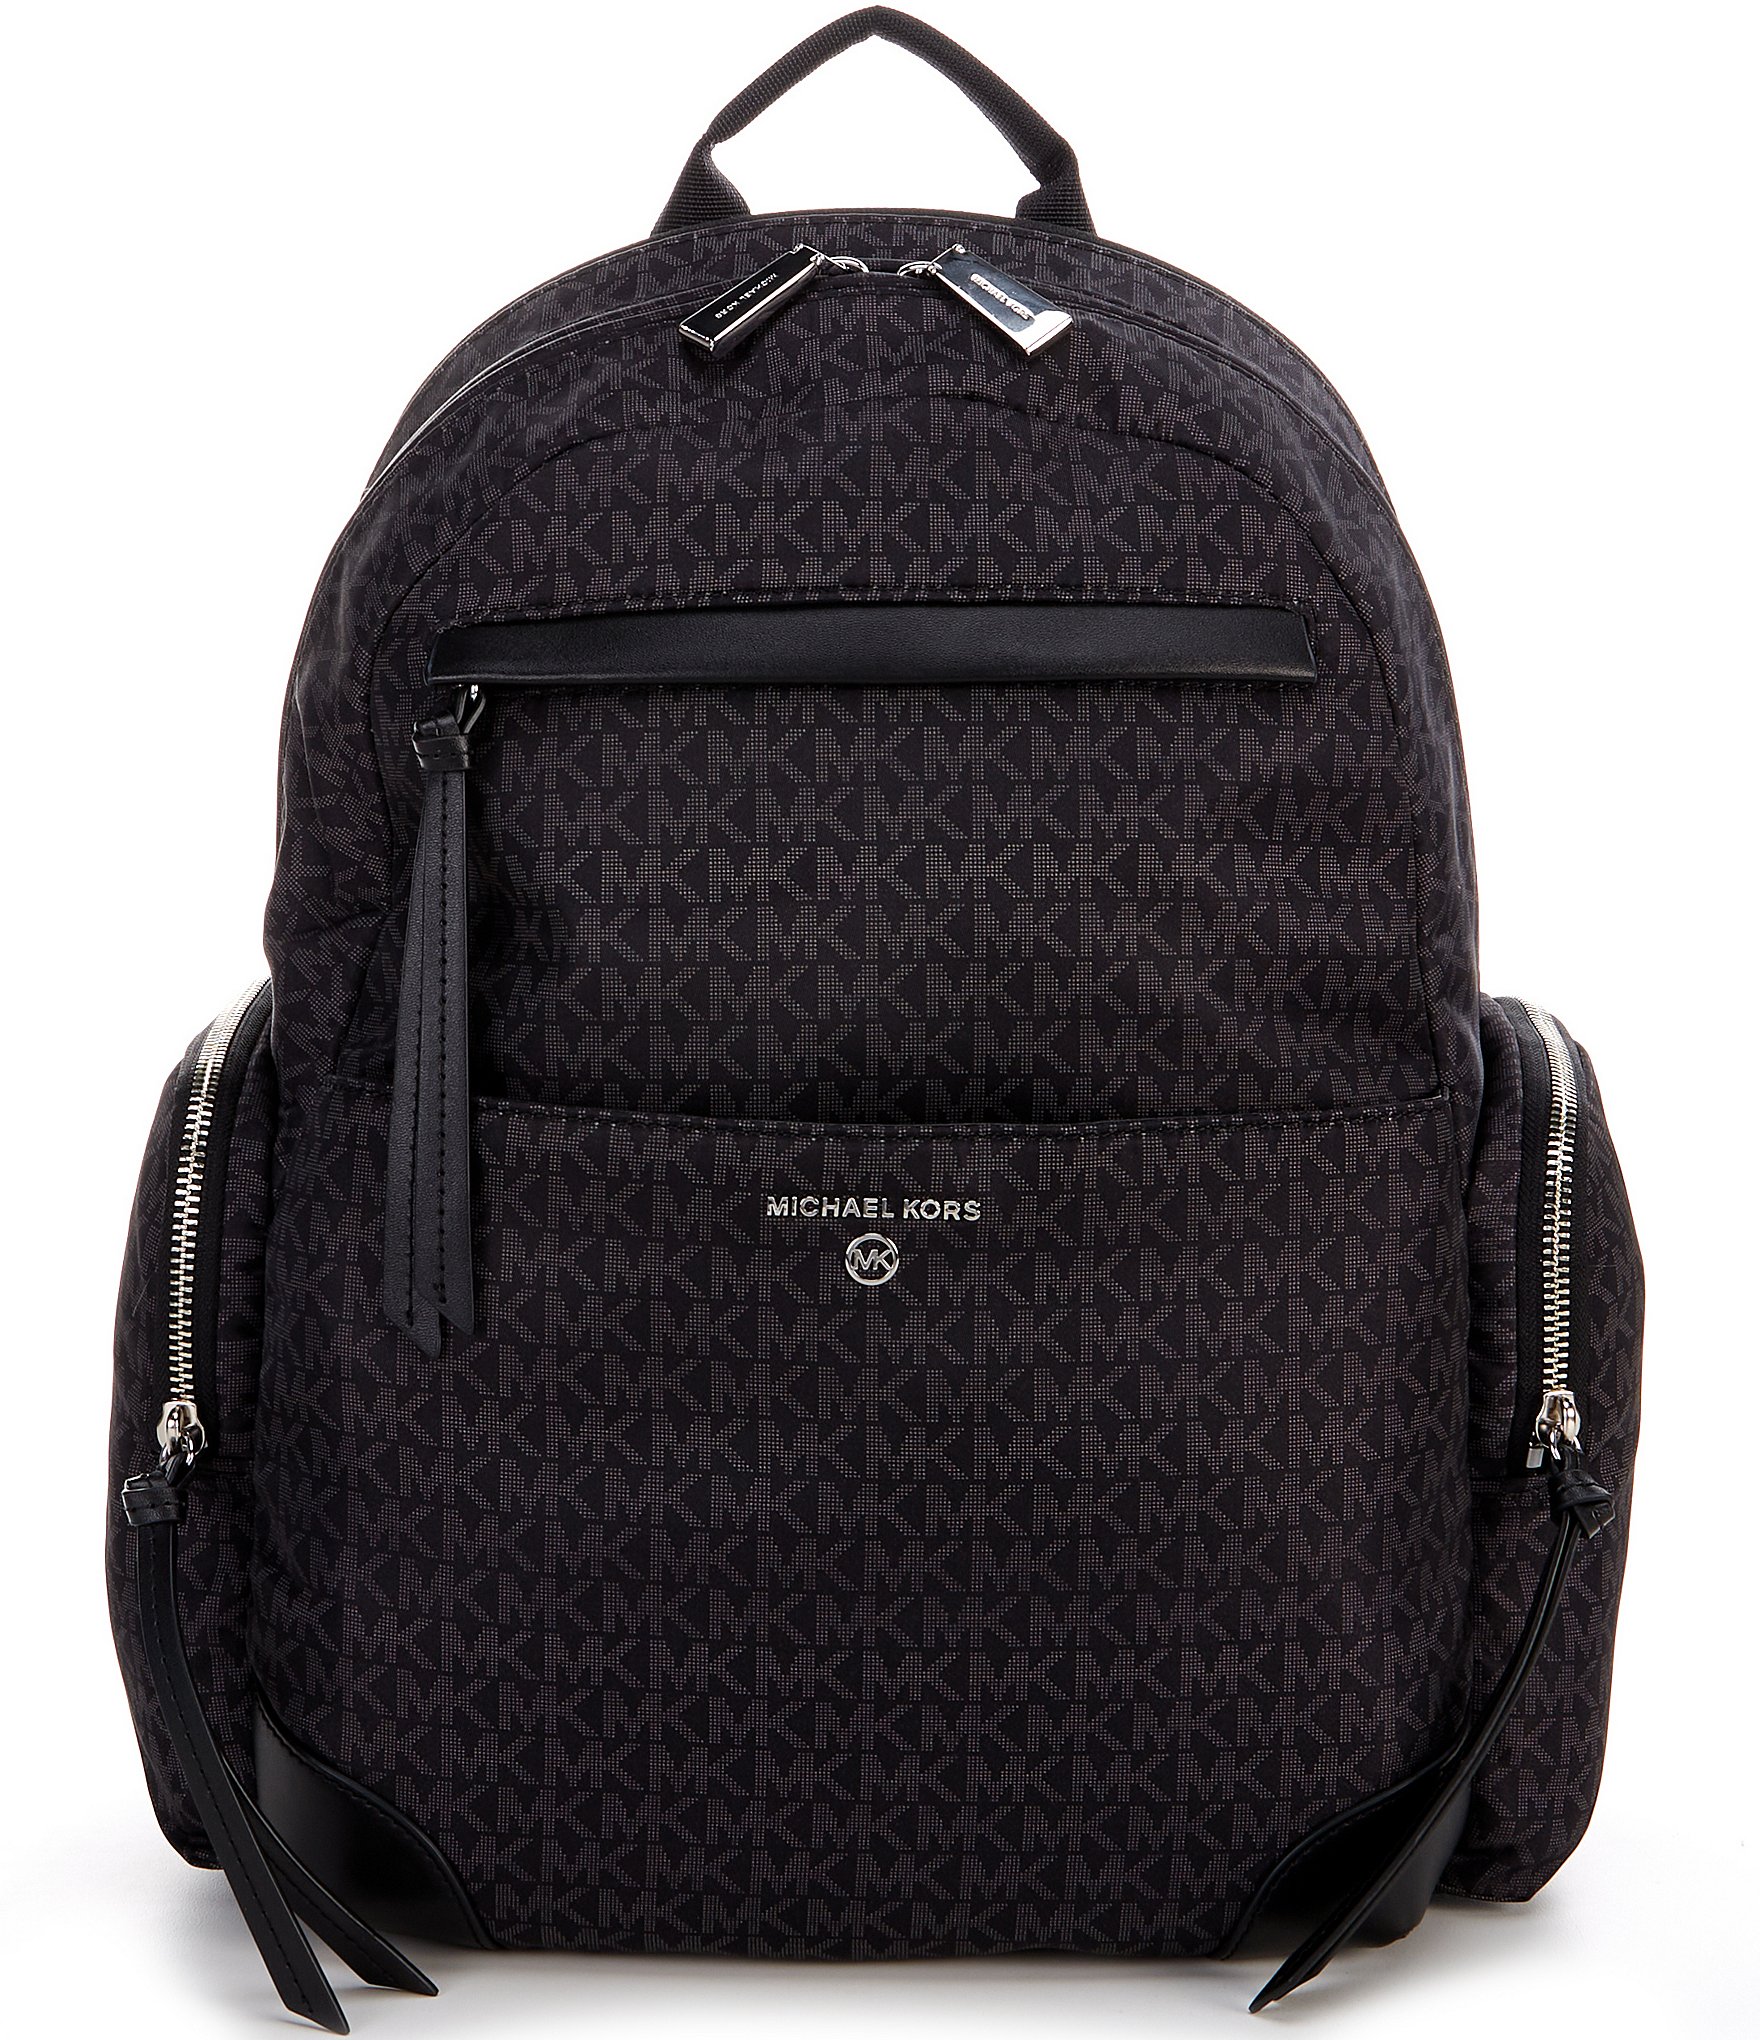 Michael kors erin large backpack black pebbled leather school bag  Fruugo  NO